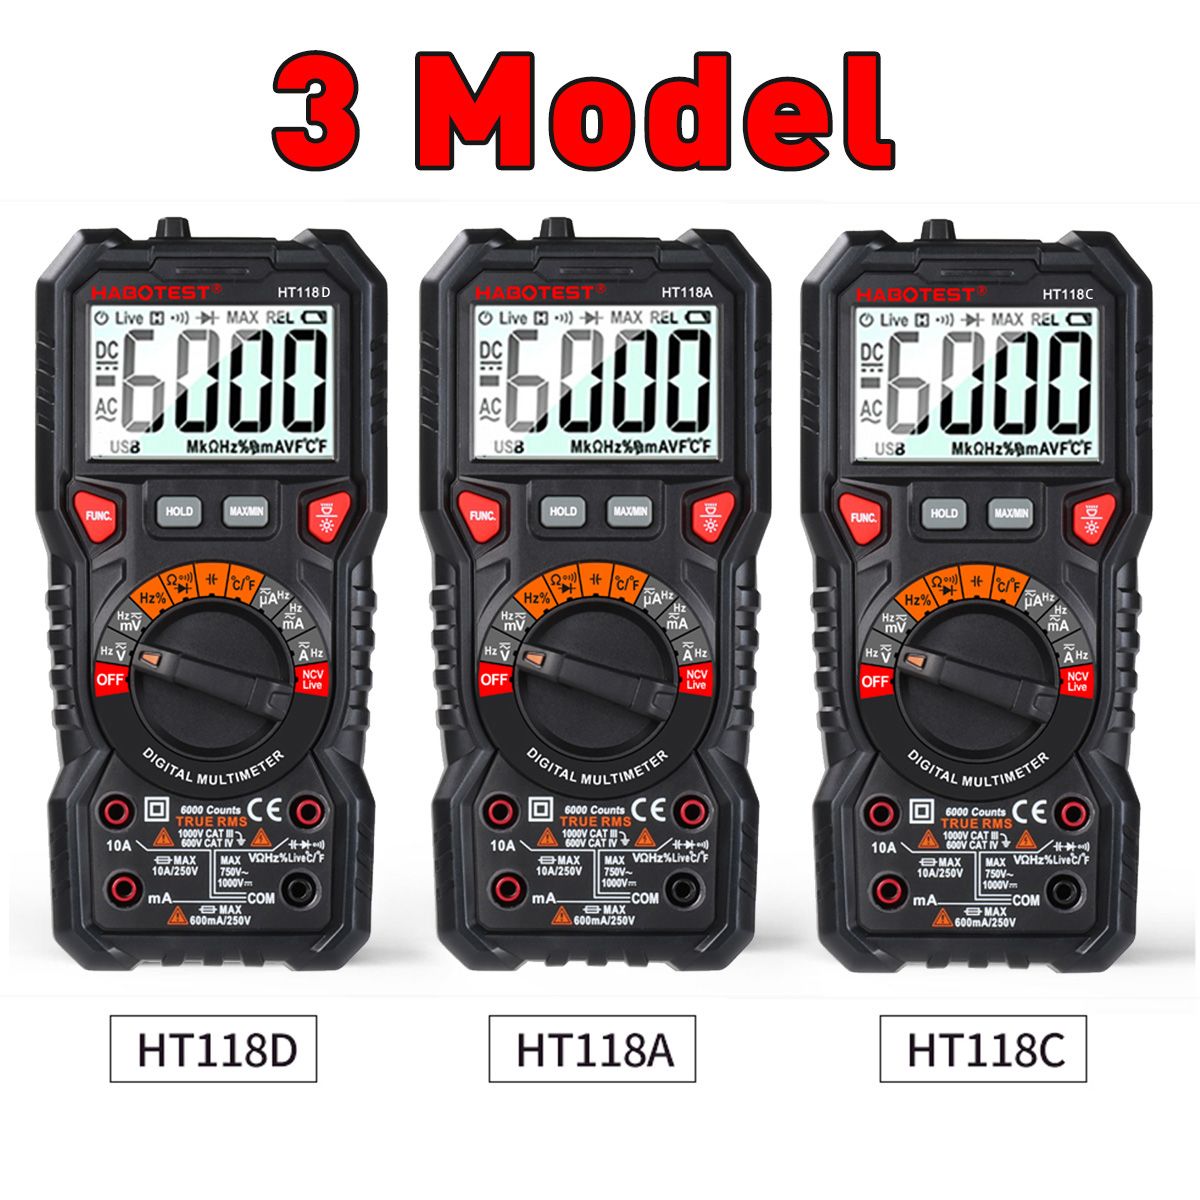 HABOTEST-NCV-Handheld-Digital-Multimeter-LCD-Backlight-Portable-ACDC-Ammeter-Voltmeter-Ohm-Voltage-T-1642581